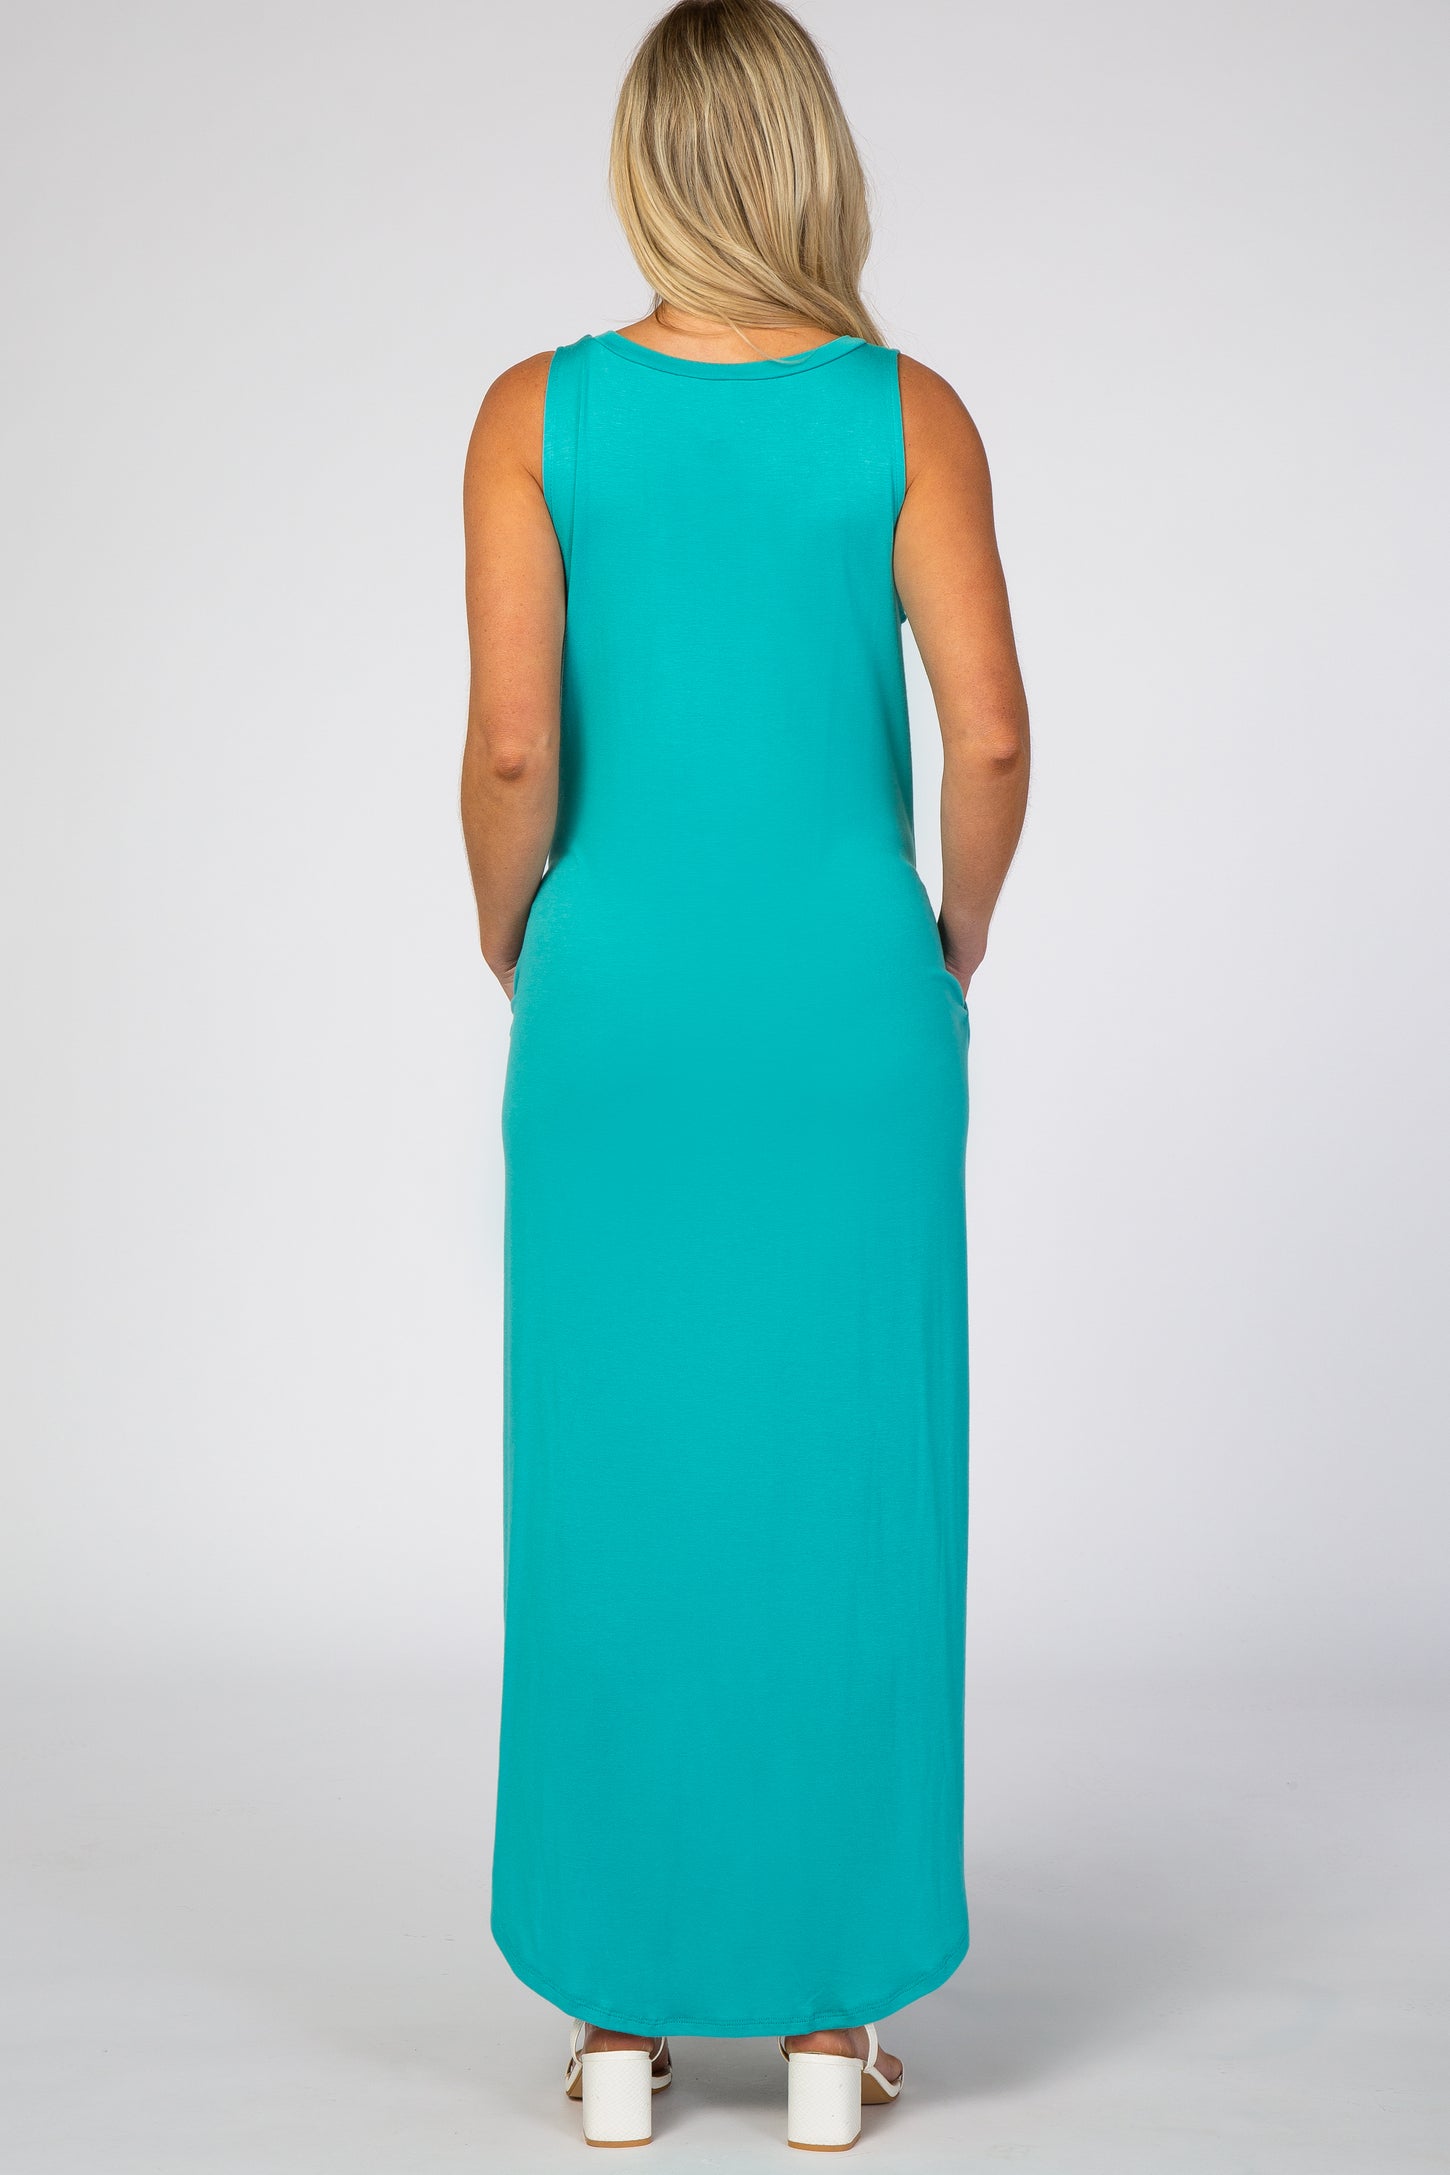 Turquoise Rounded Hem Maternity Maxi Dress